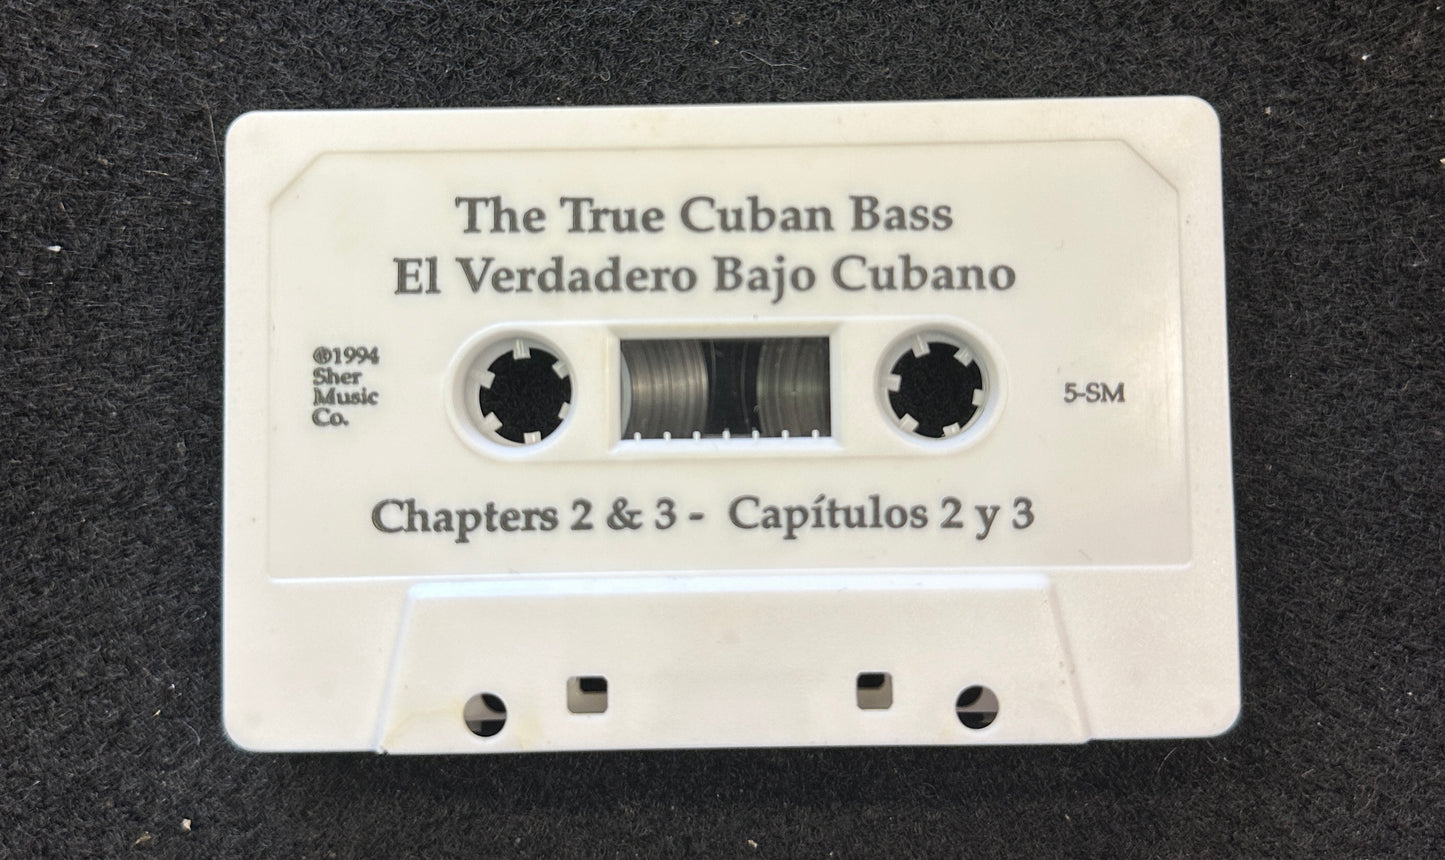 The True Cuban Bass by Carlos Del Puerto & Silvio Vergara (Second Hand)